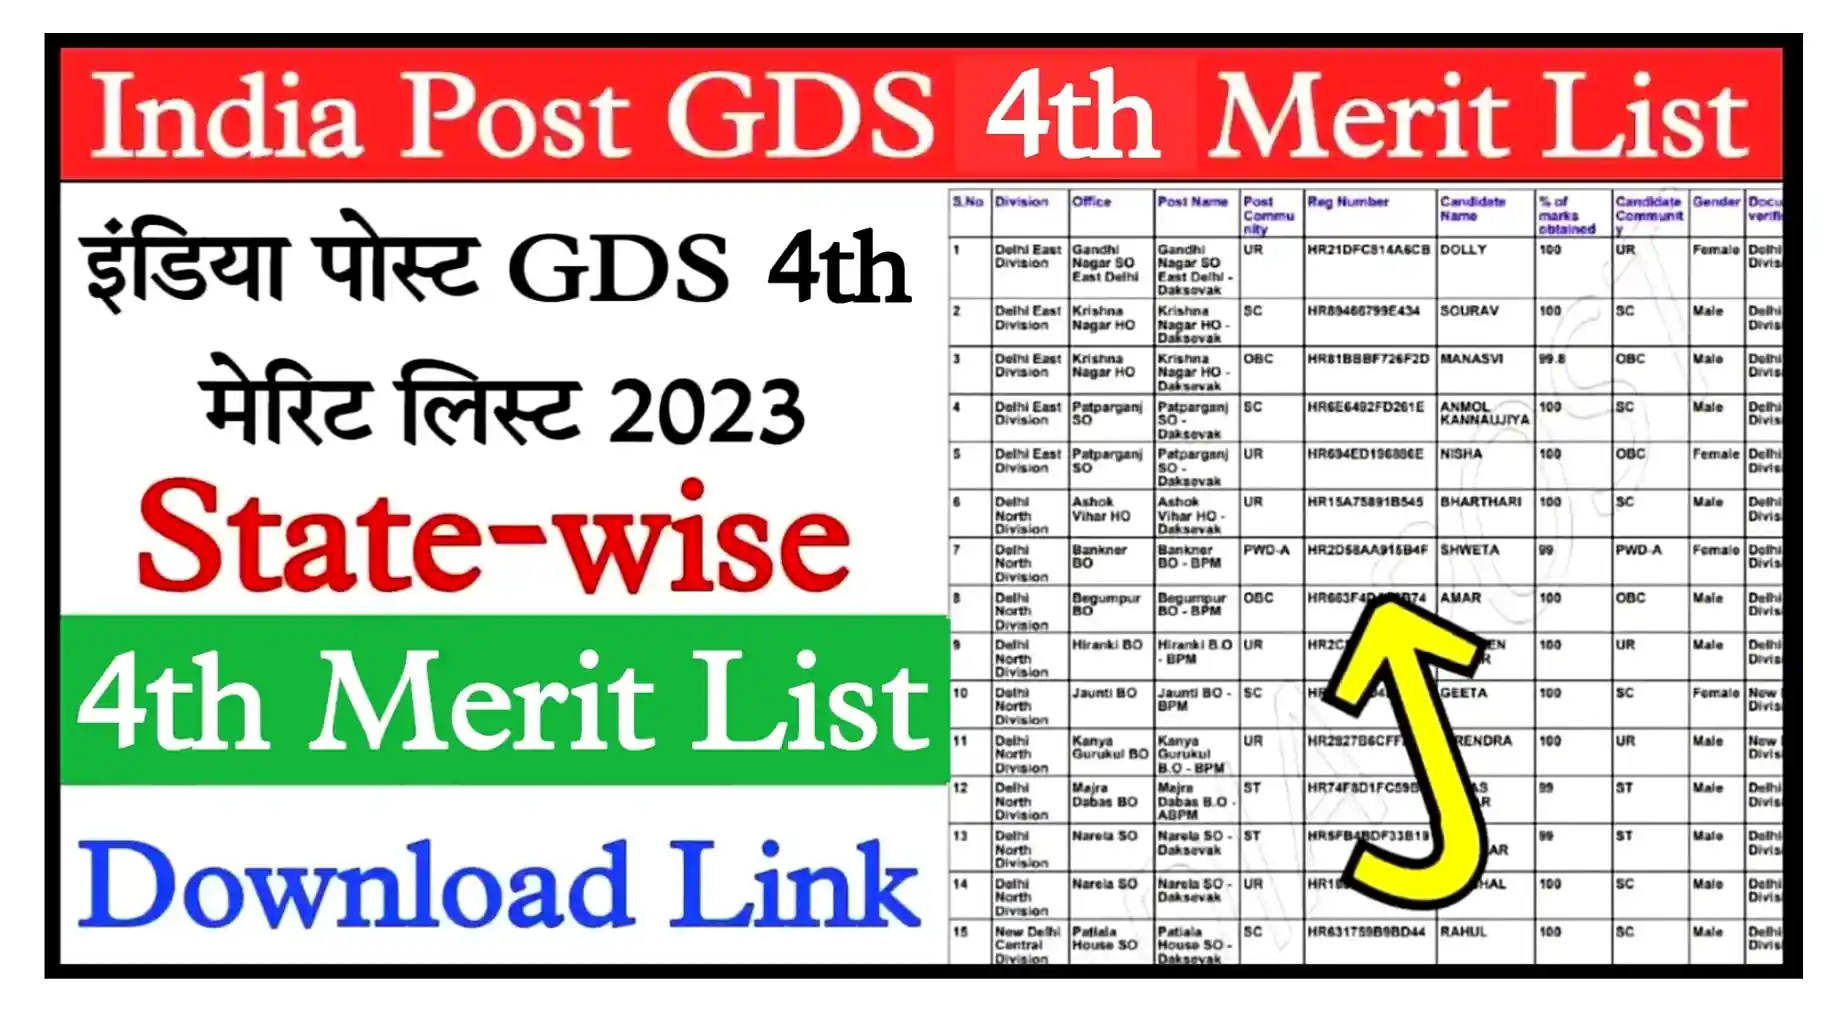 India Post GDS 4th Merit List Result 2023 इंडिया पोस्ट जीडीएस रिजल्ट की 4th मेरिट लिस्ट जारी, यहां से डाउनलोड करें